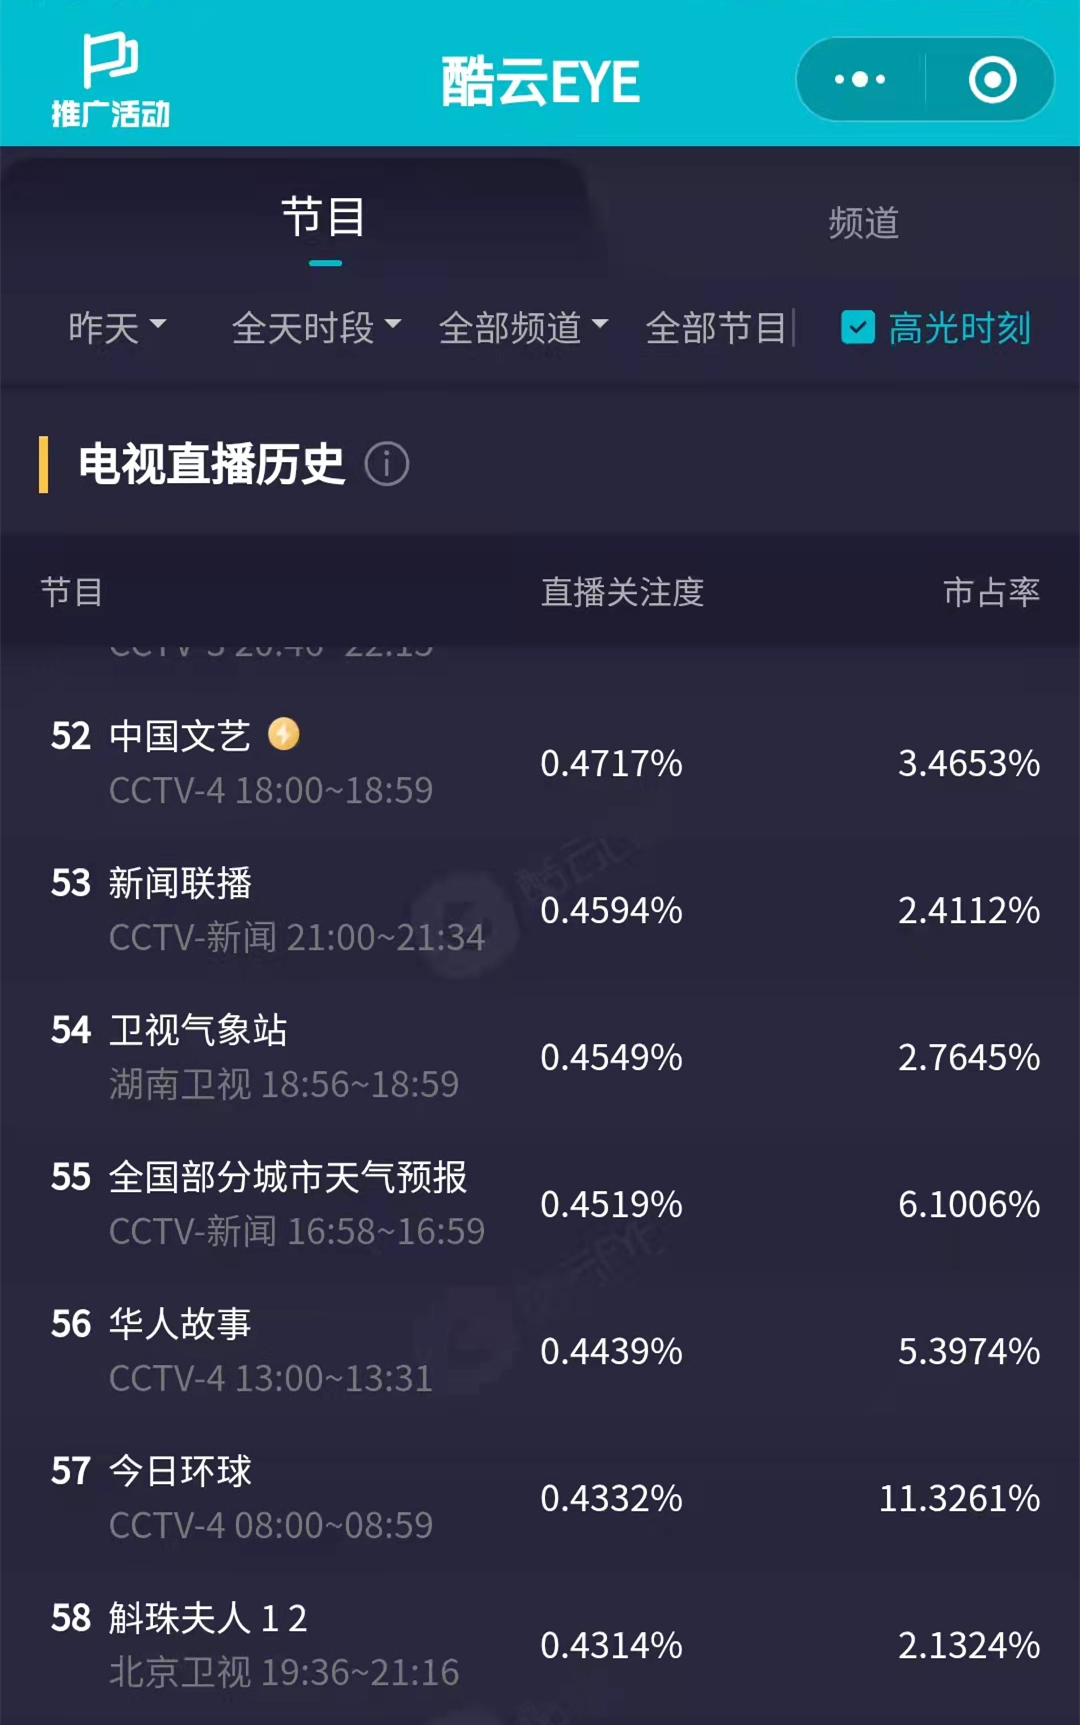 《斛珠夫人》北京卫视开播,04314%的收视率,排名第58